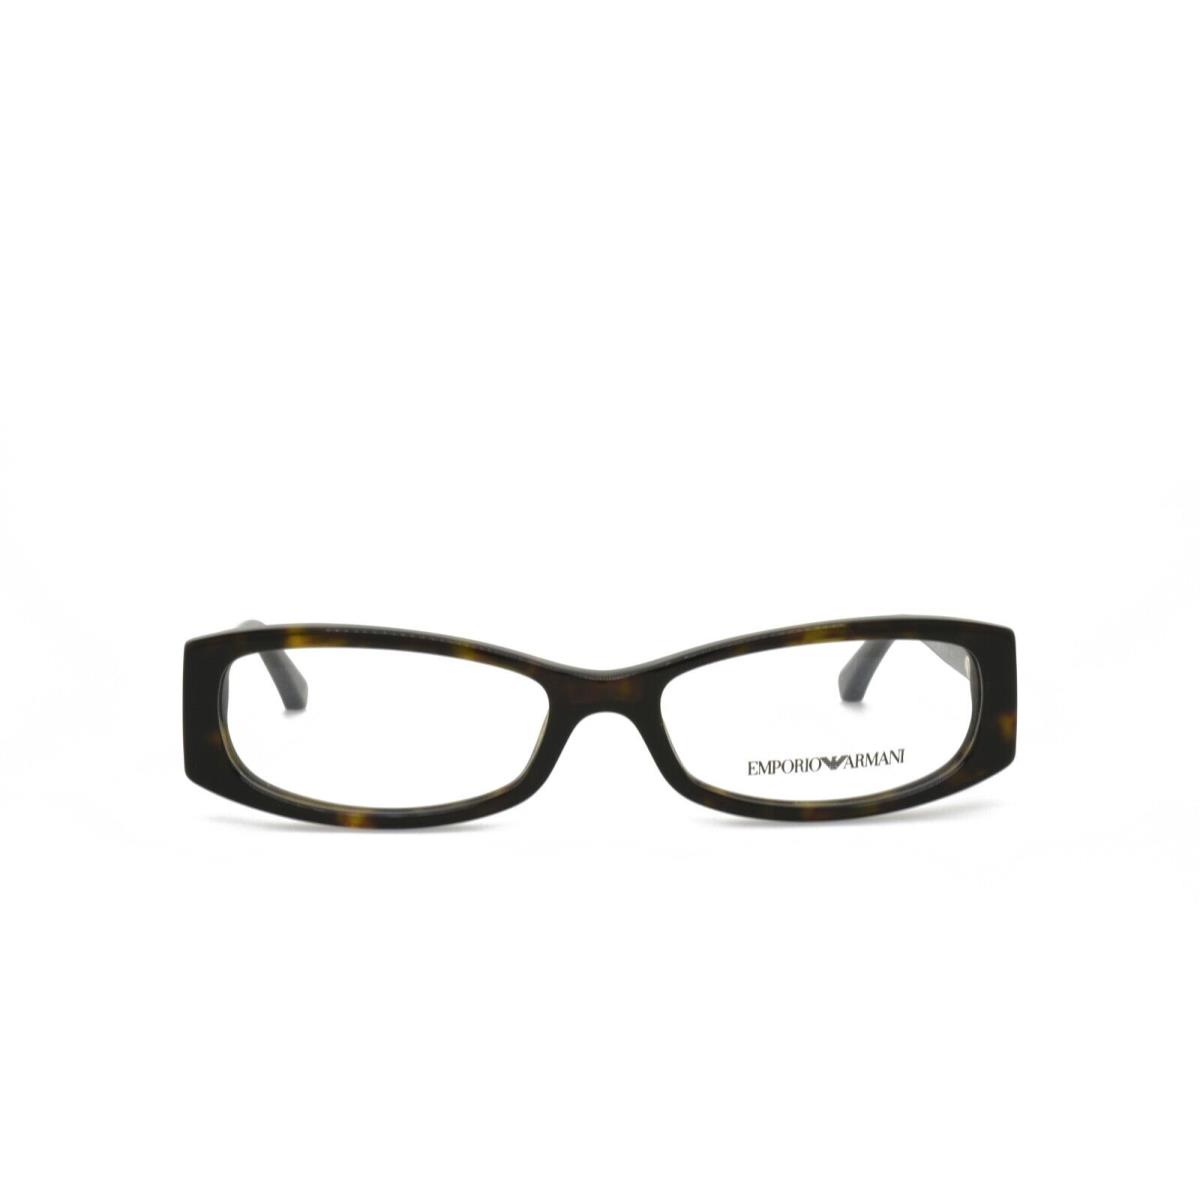 Emporio Armani eyeglasses  - Tortoise Frame